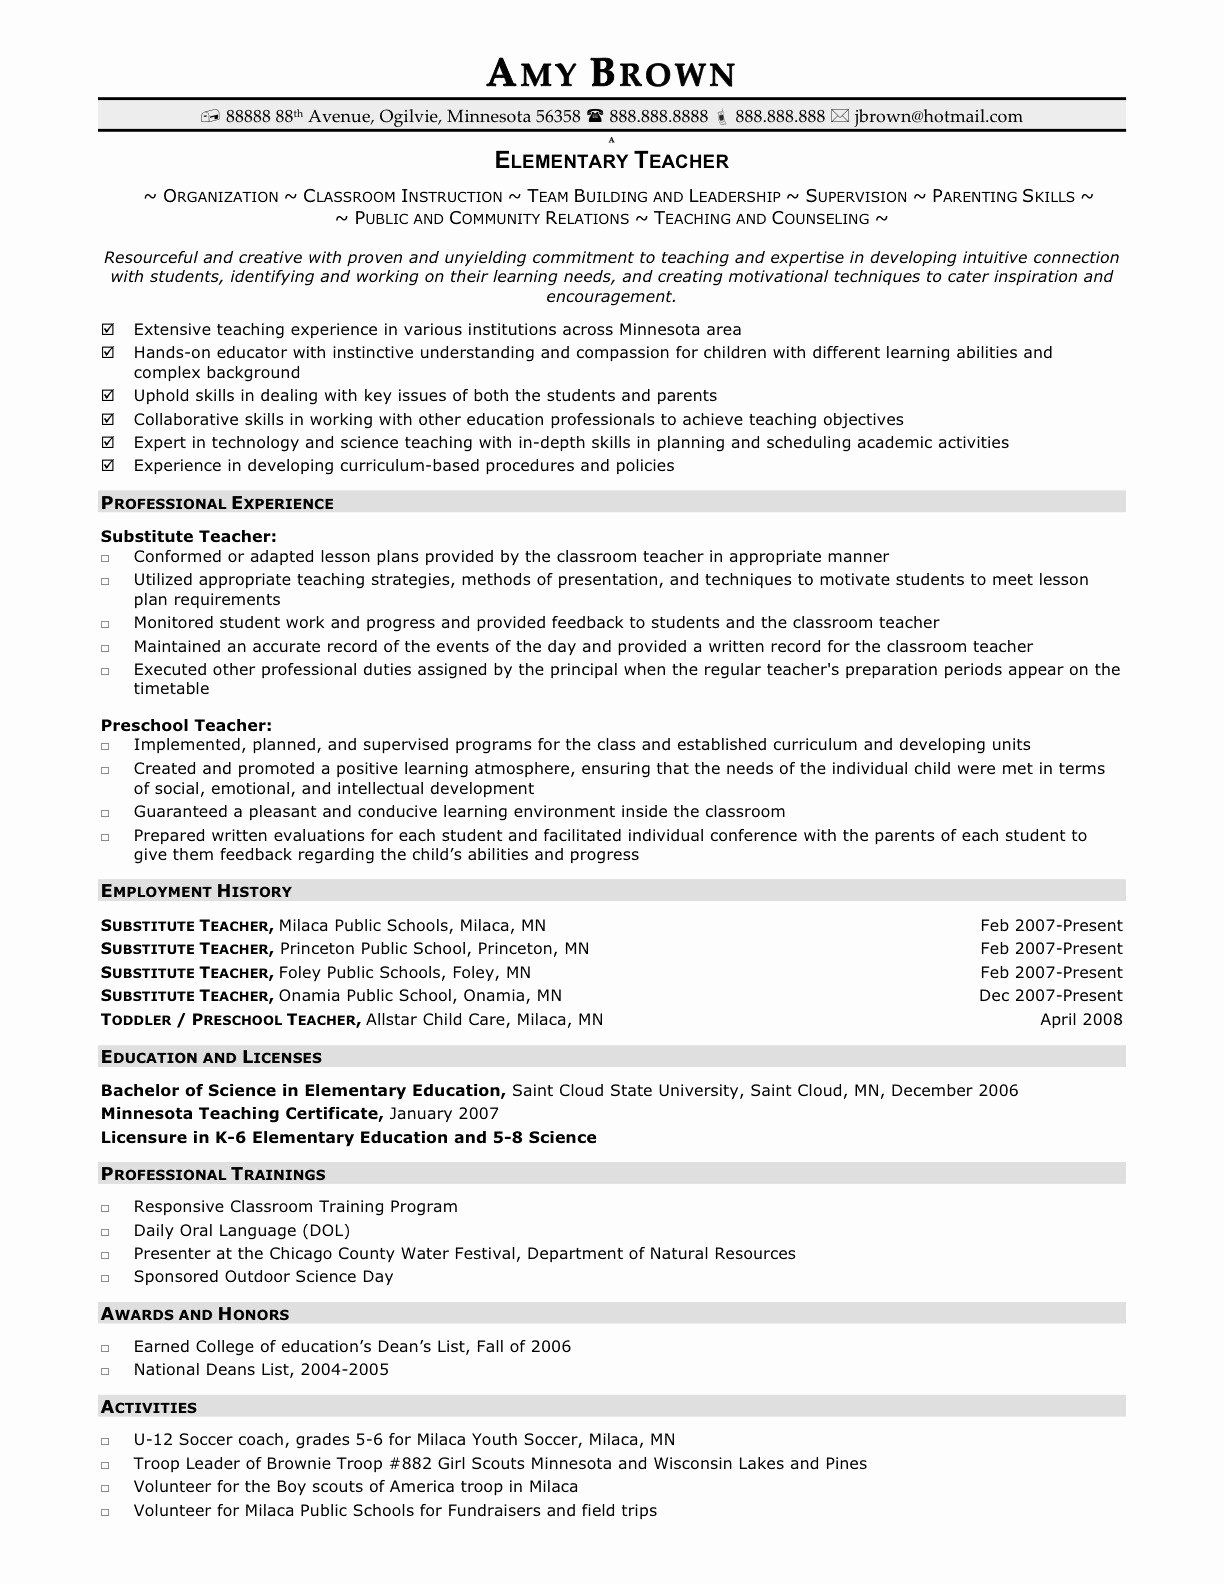 Resume for Elementary Teachers Teacher Resume Examples